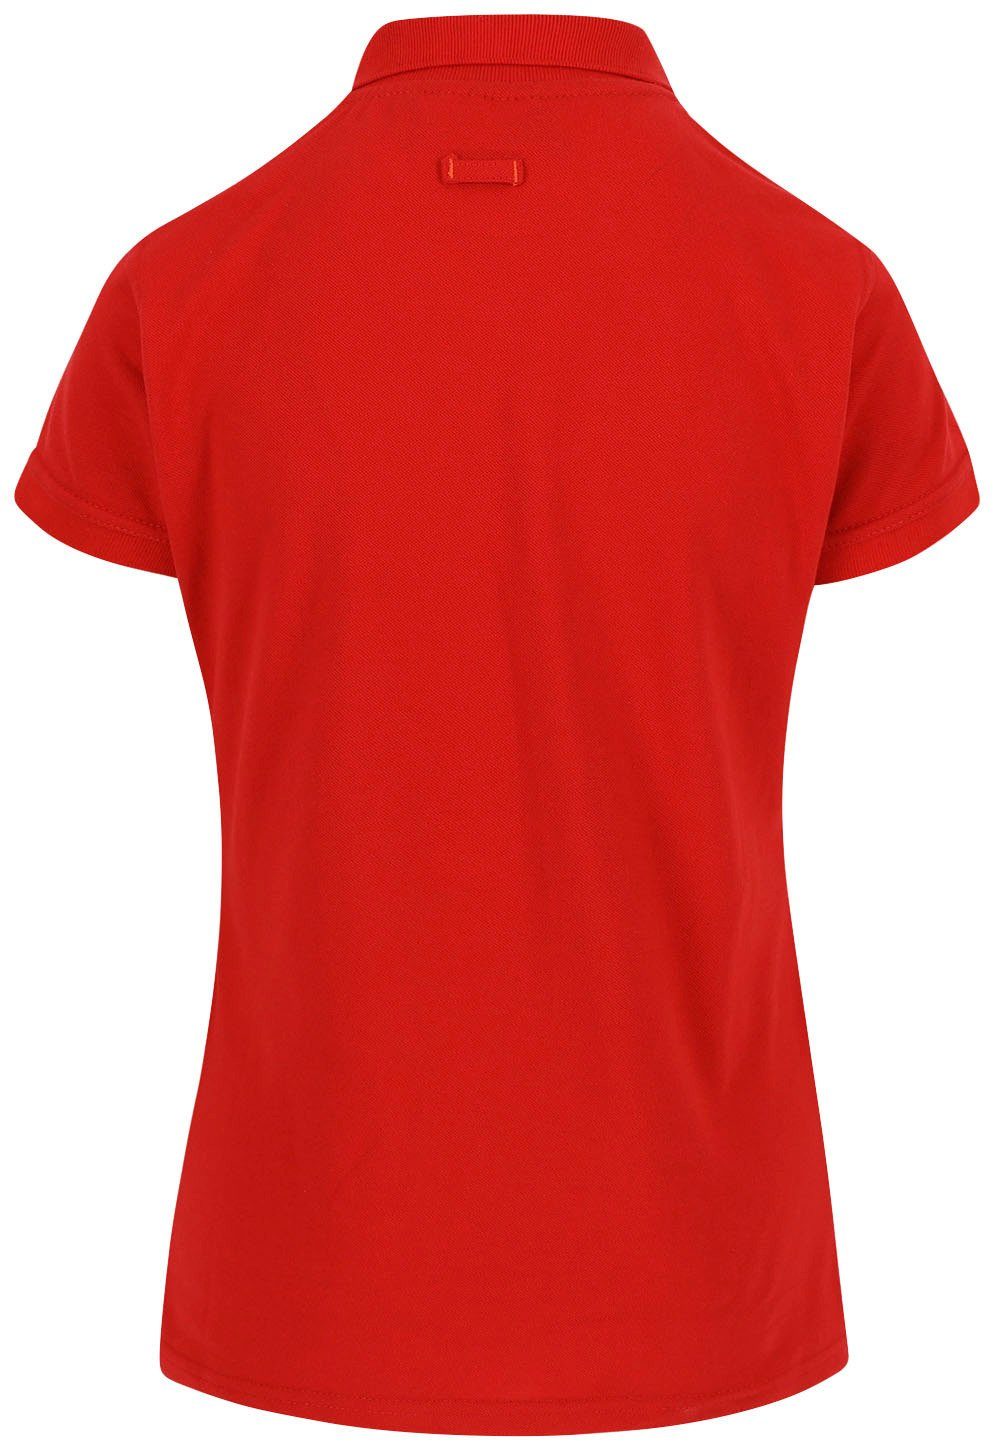 Kurzärmlig Rippstrick-Kragen Bündchen Herock Freya Damen rot Brusttasche 1 Figurbetont, Polo und Poloshirt sowie mit